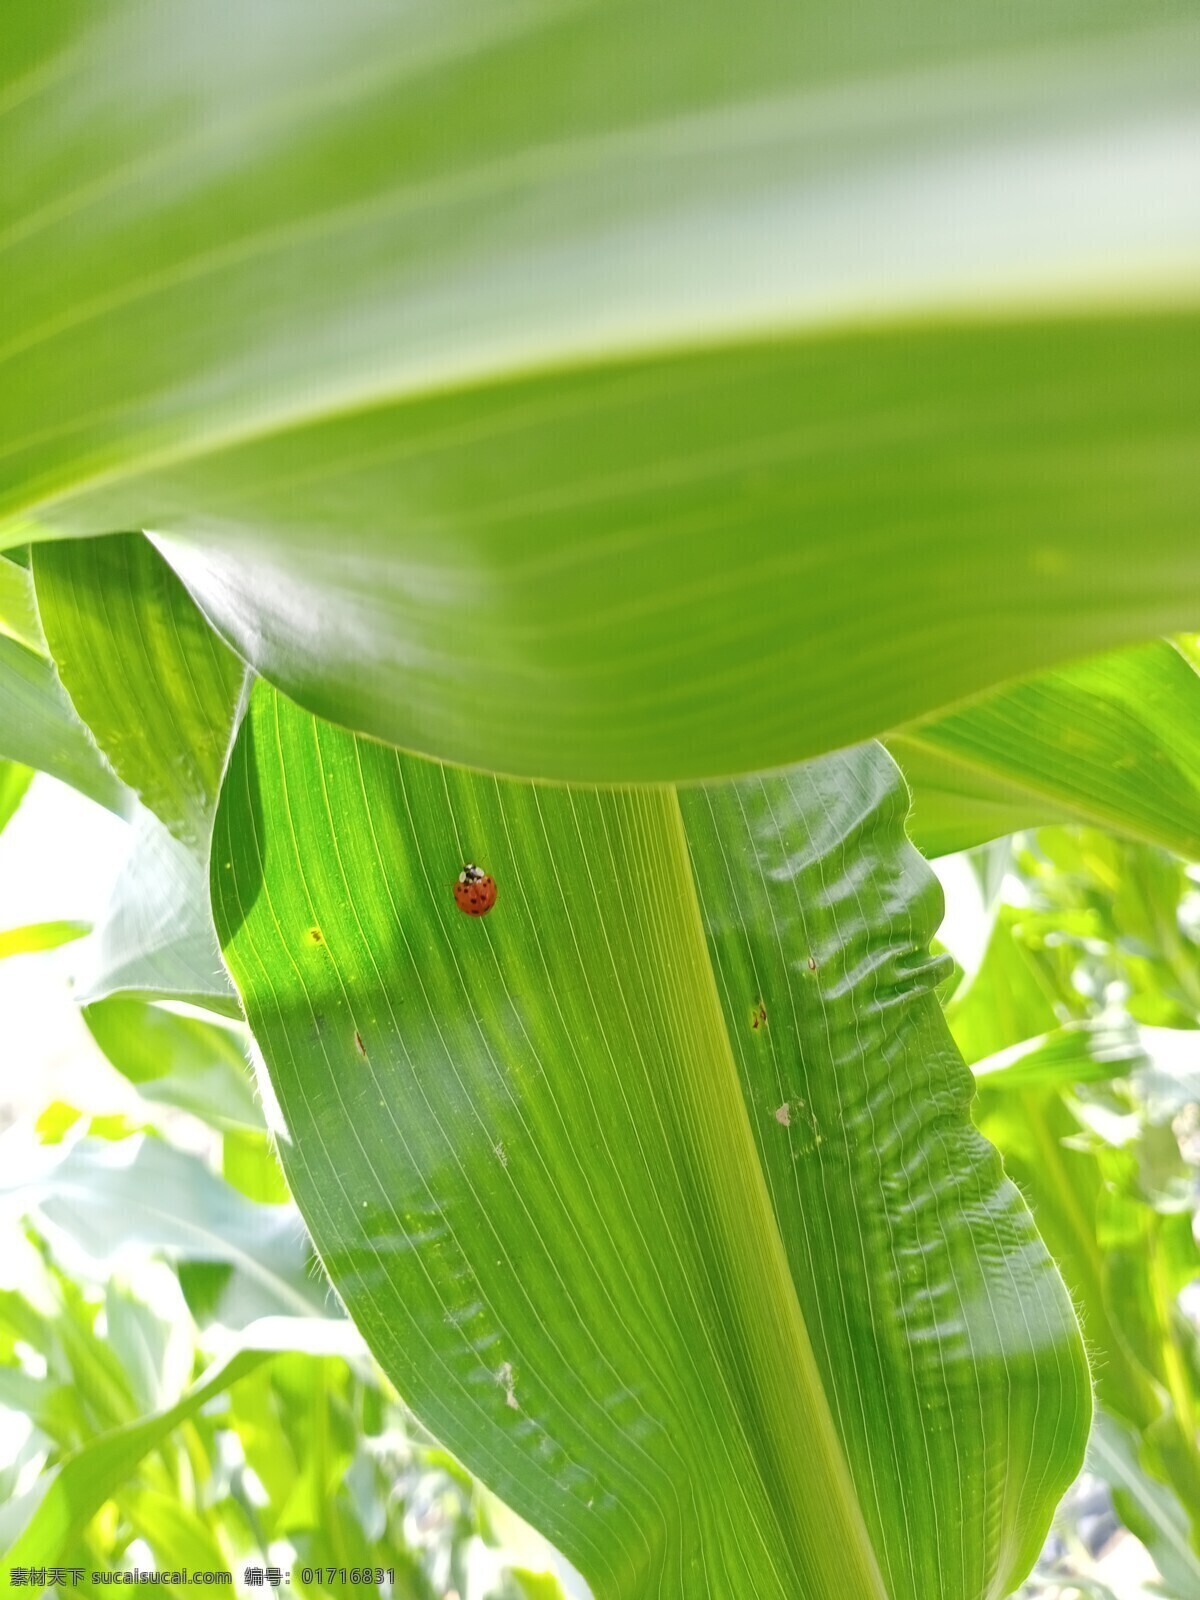 玉米叶图片 绿叶 小虫子 舒适 壁纸 护眼 旅游摄影 自然风景